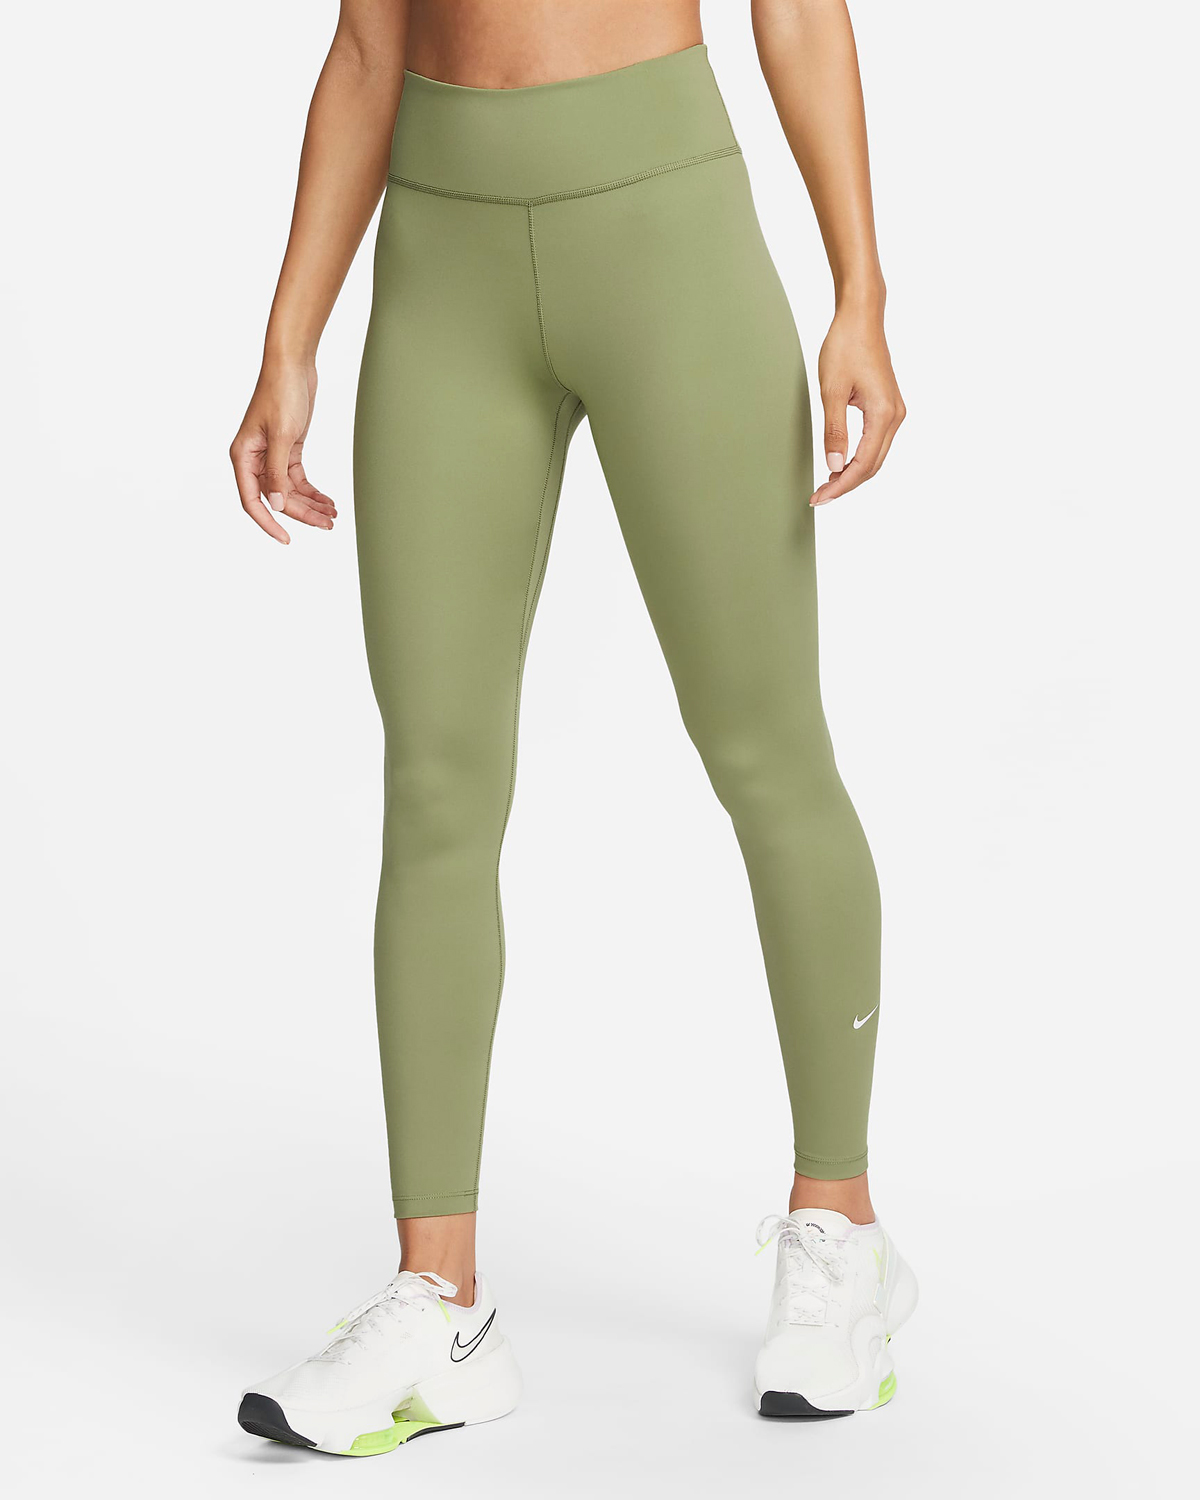 Nike-Womens-Leggings-Alligator-Green